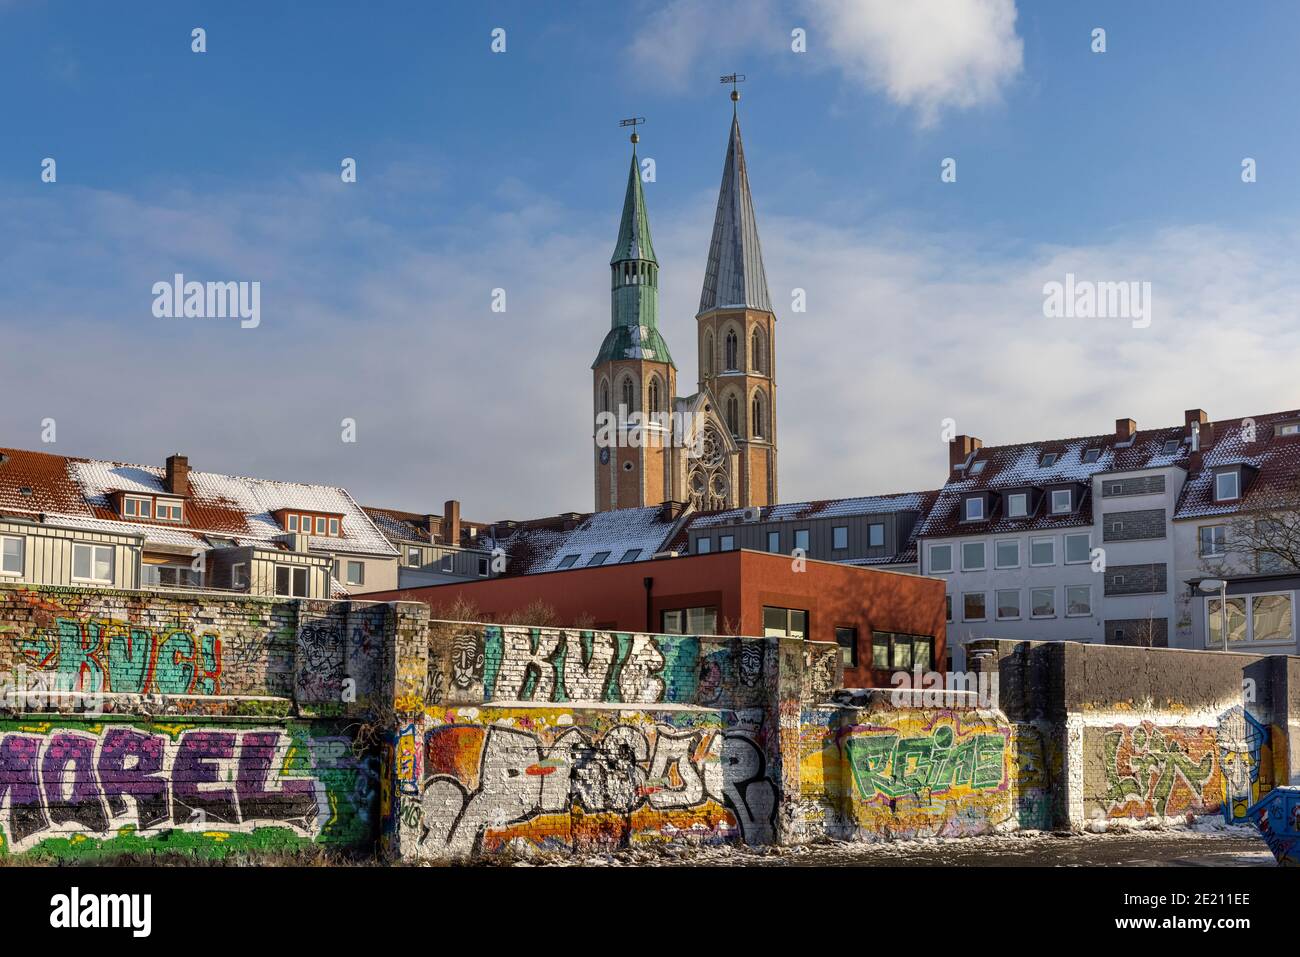 Braunschweig ist eine alte deutsche Stadt mit moderner Straßenkultur. Graffiti sind auf modernen Gebäuden sichtbar, aber historische sind unberührt geblieben. Stockfoto